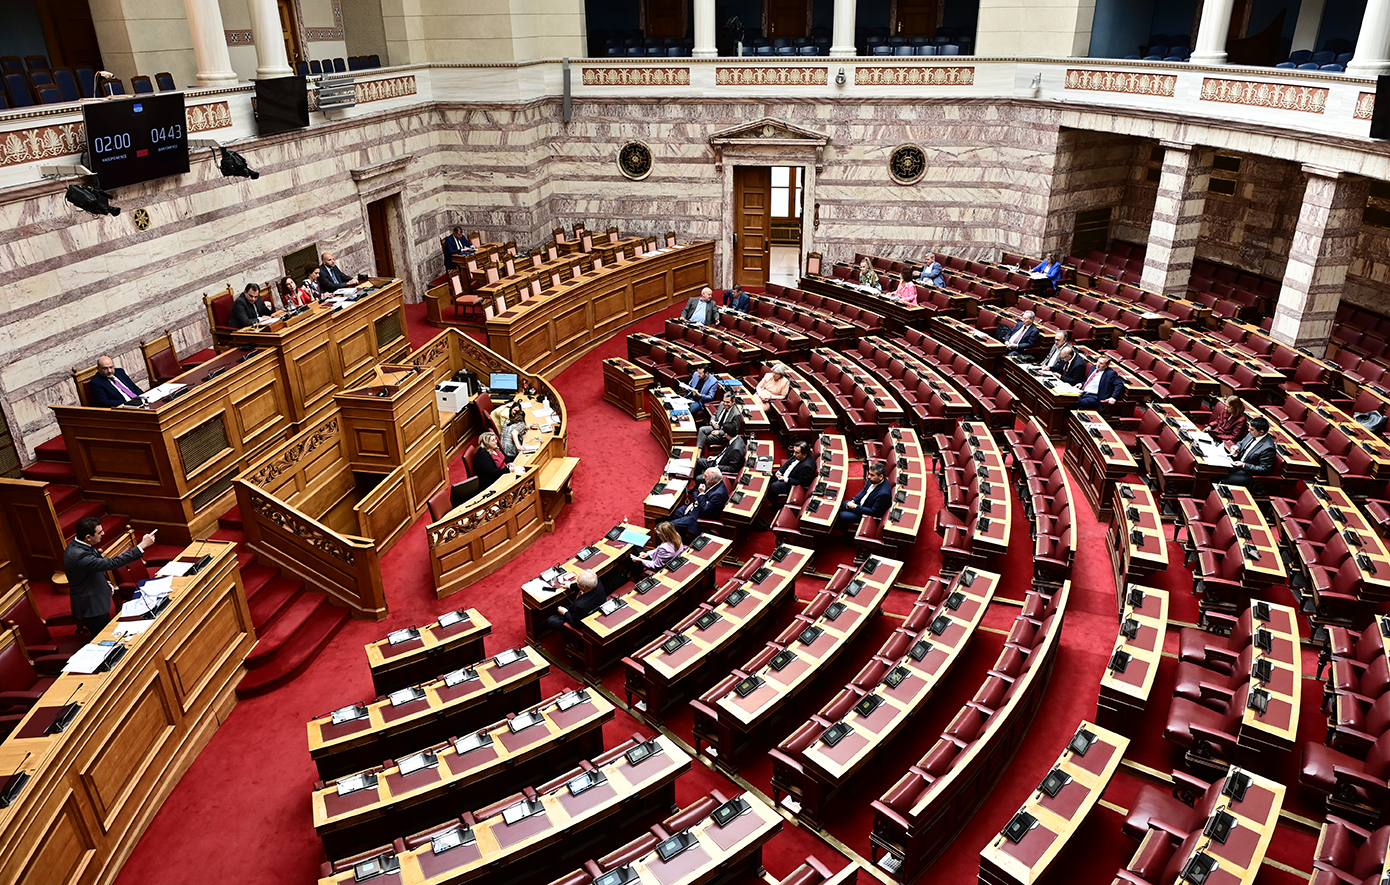 Ο ανασχηματισμός φέρνει και αλλαγές προσώπων στη Βουλή: Νέος γενικός γραμματέας ορίζεται ο Βασίλης Μπαγιώκος